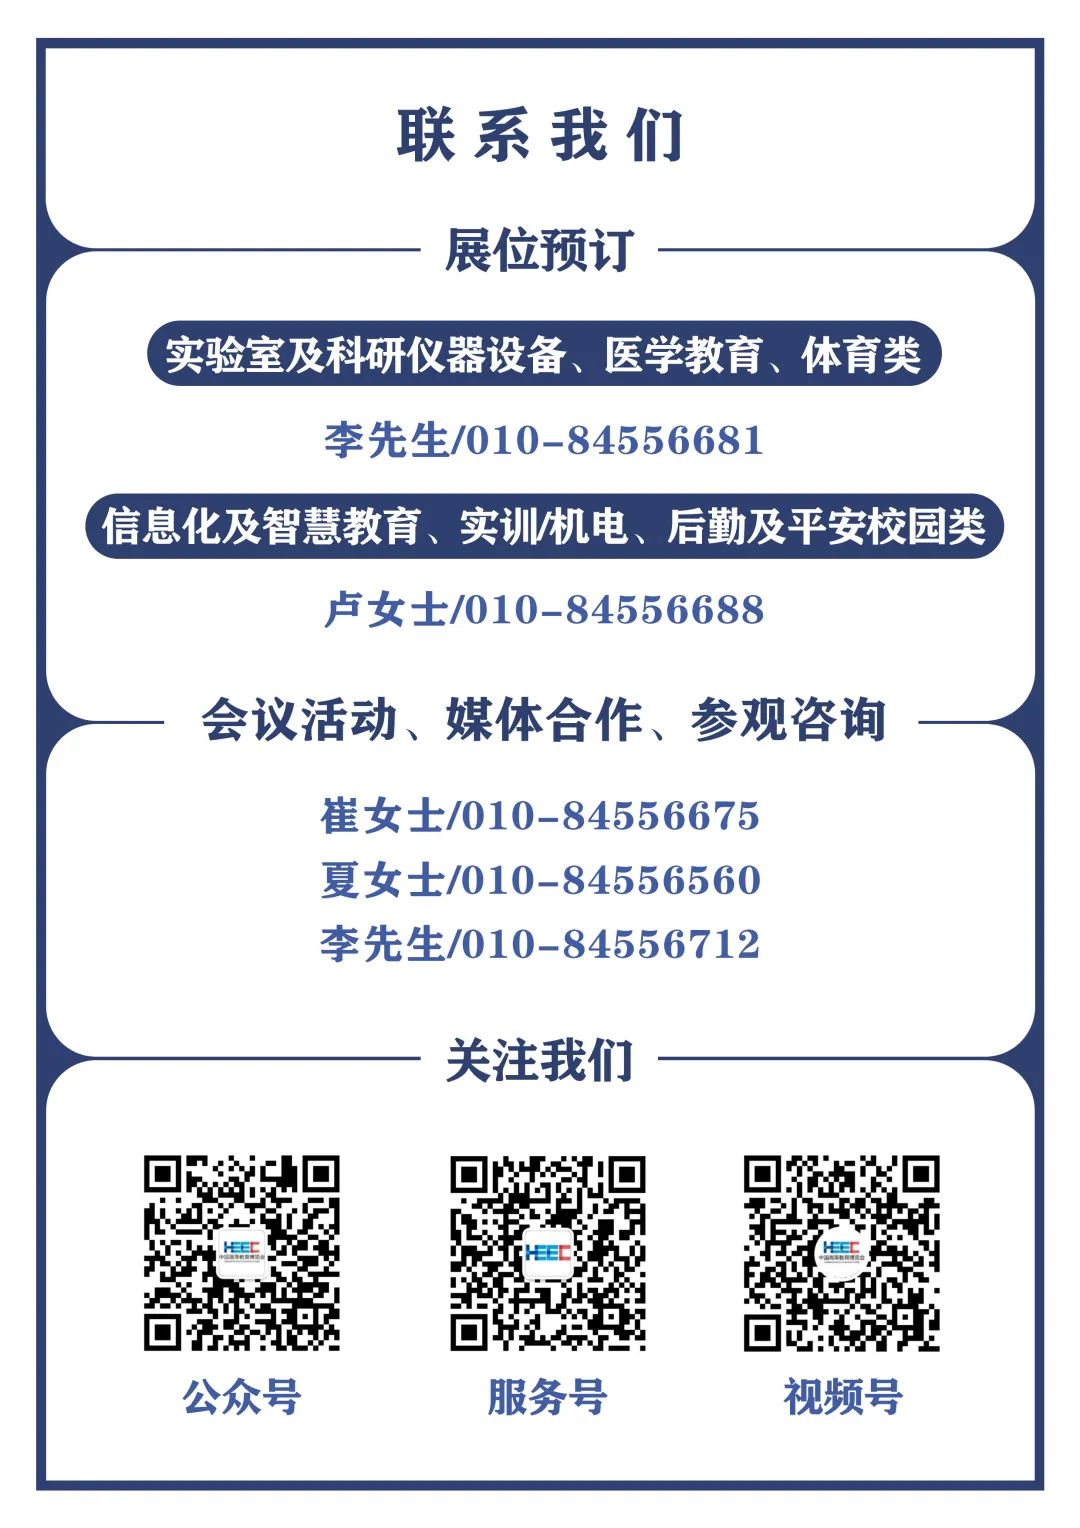 第57届中国高等教育博览会招商招展的通知